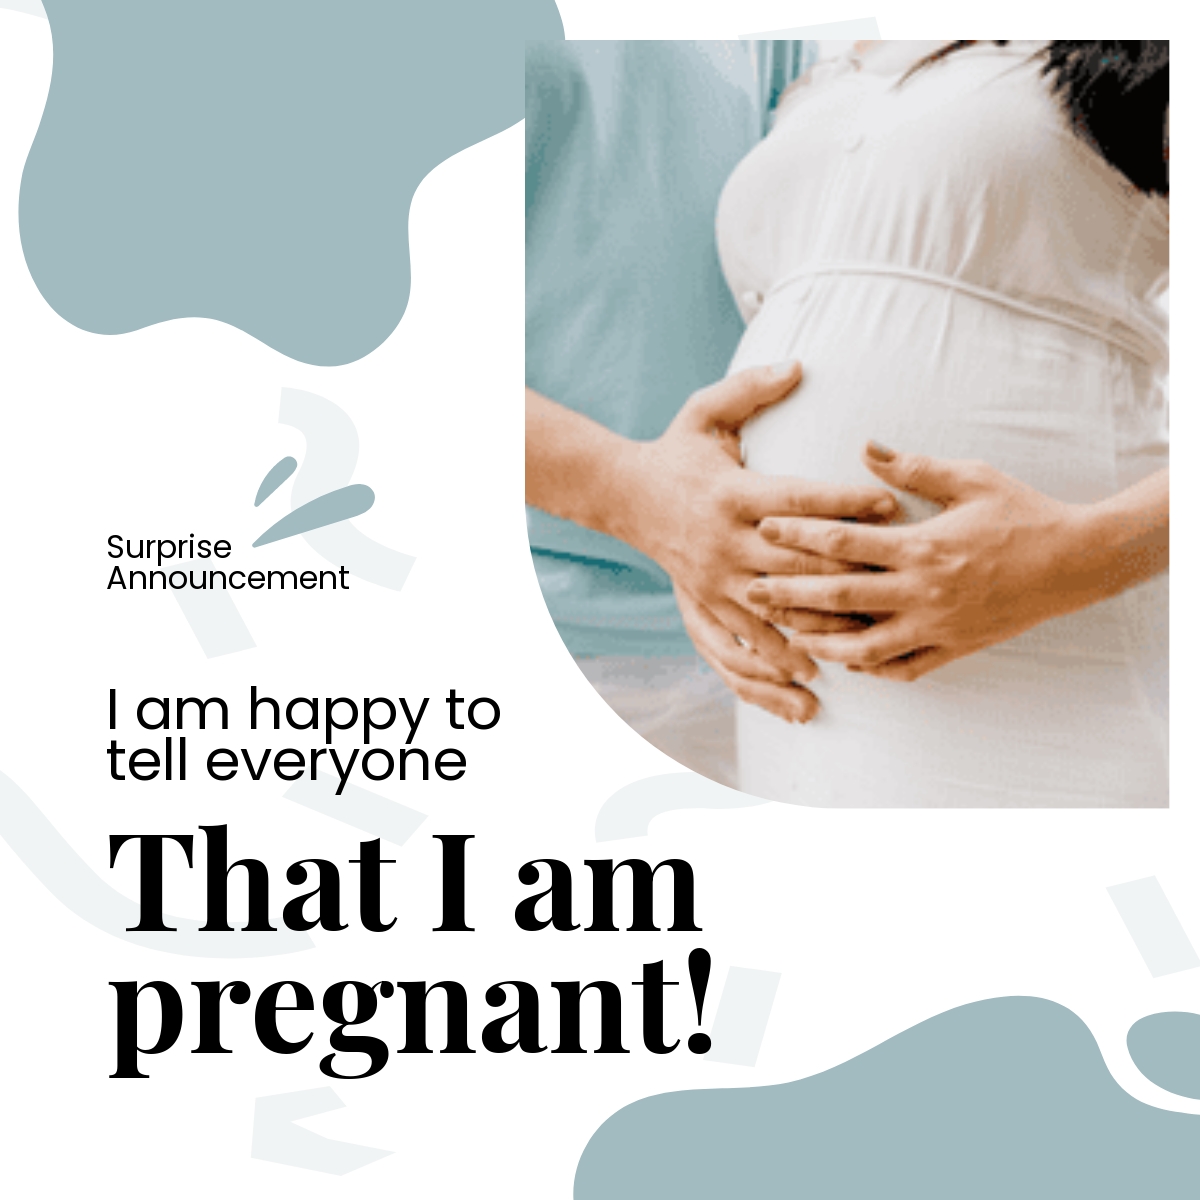 Surprise Pregnancy Announcement Linkedin Post